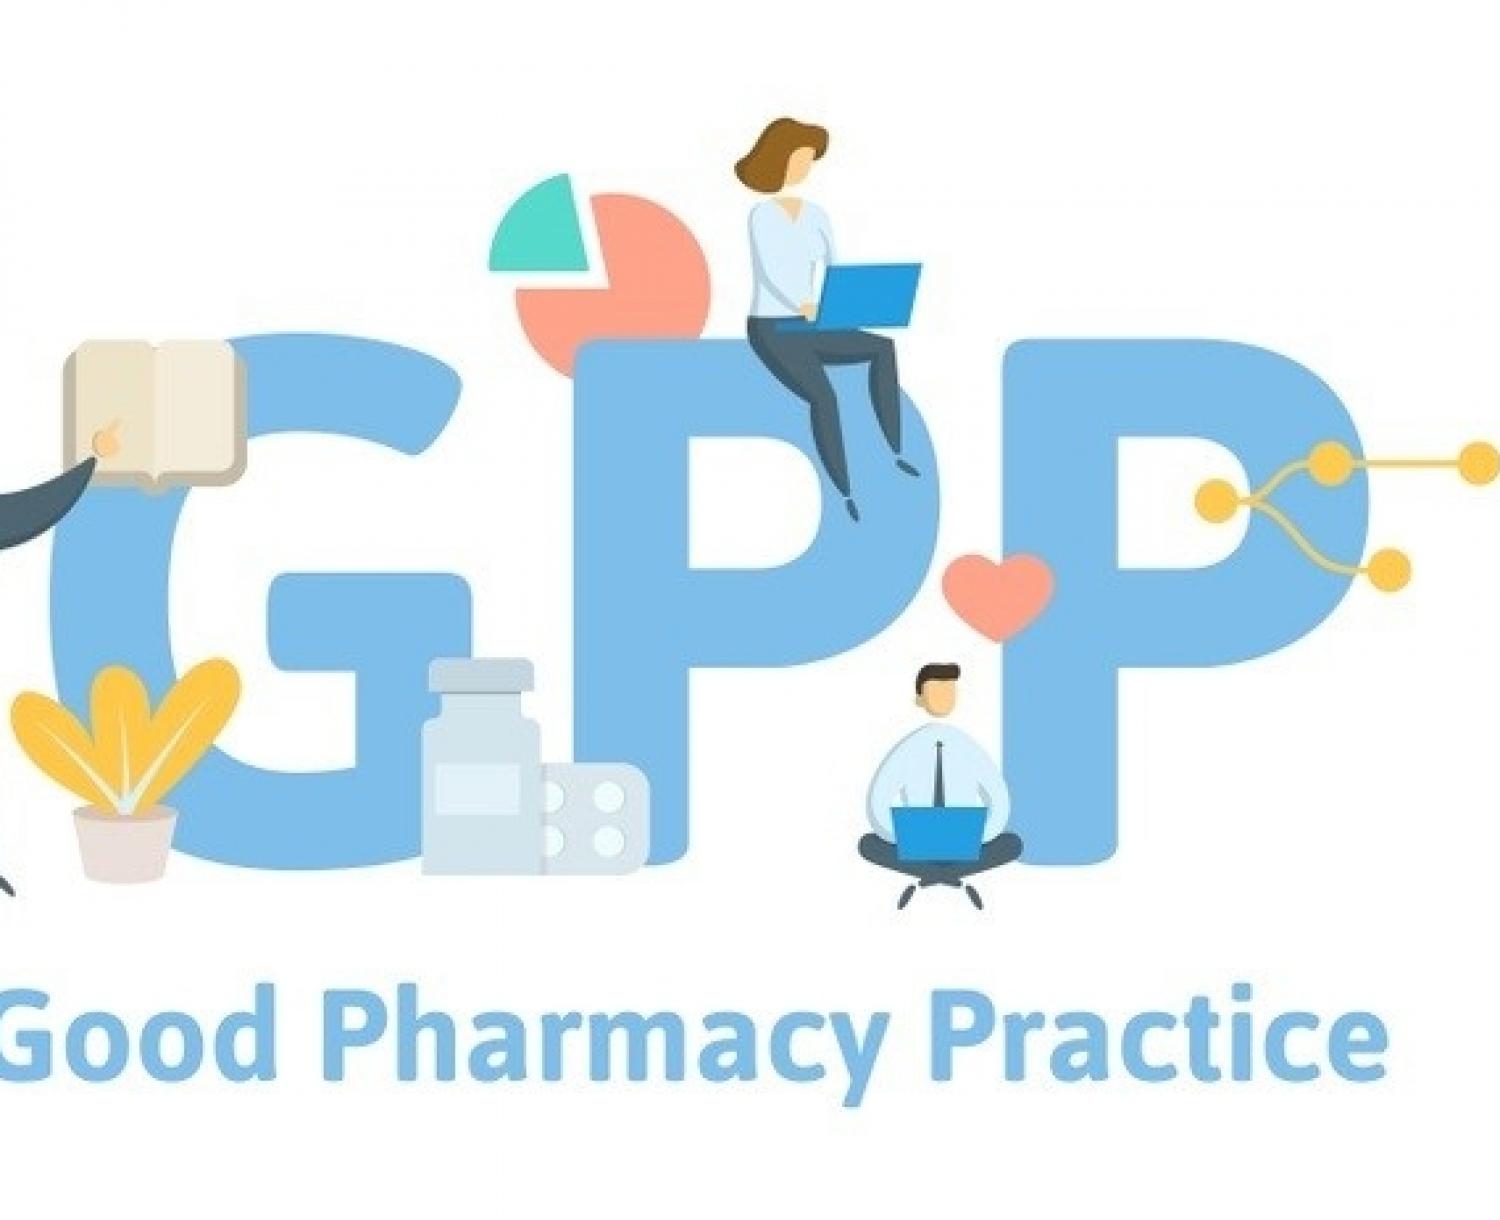 Надлежащая Аптечная Практика Gpp Устанавливает Правила